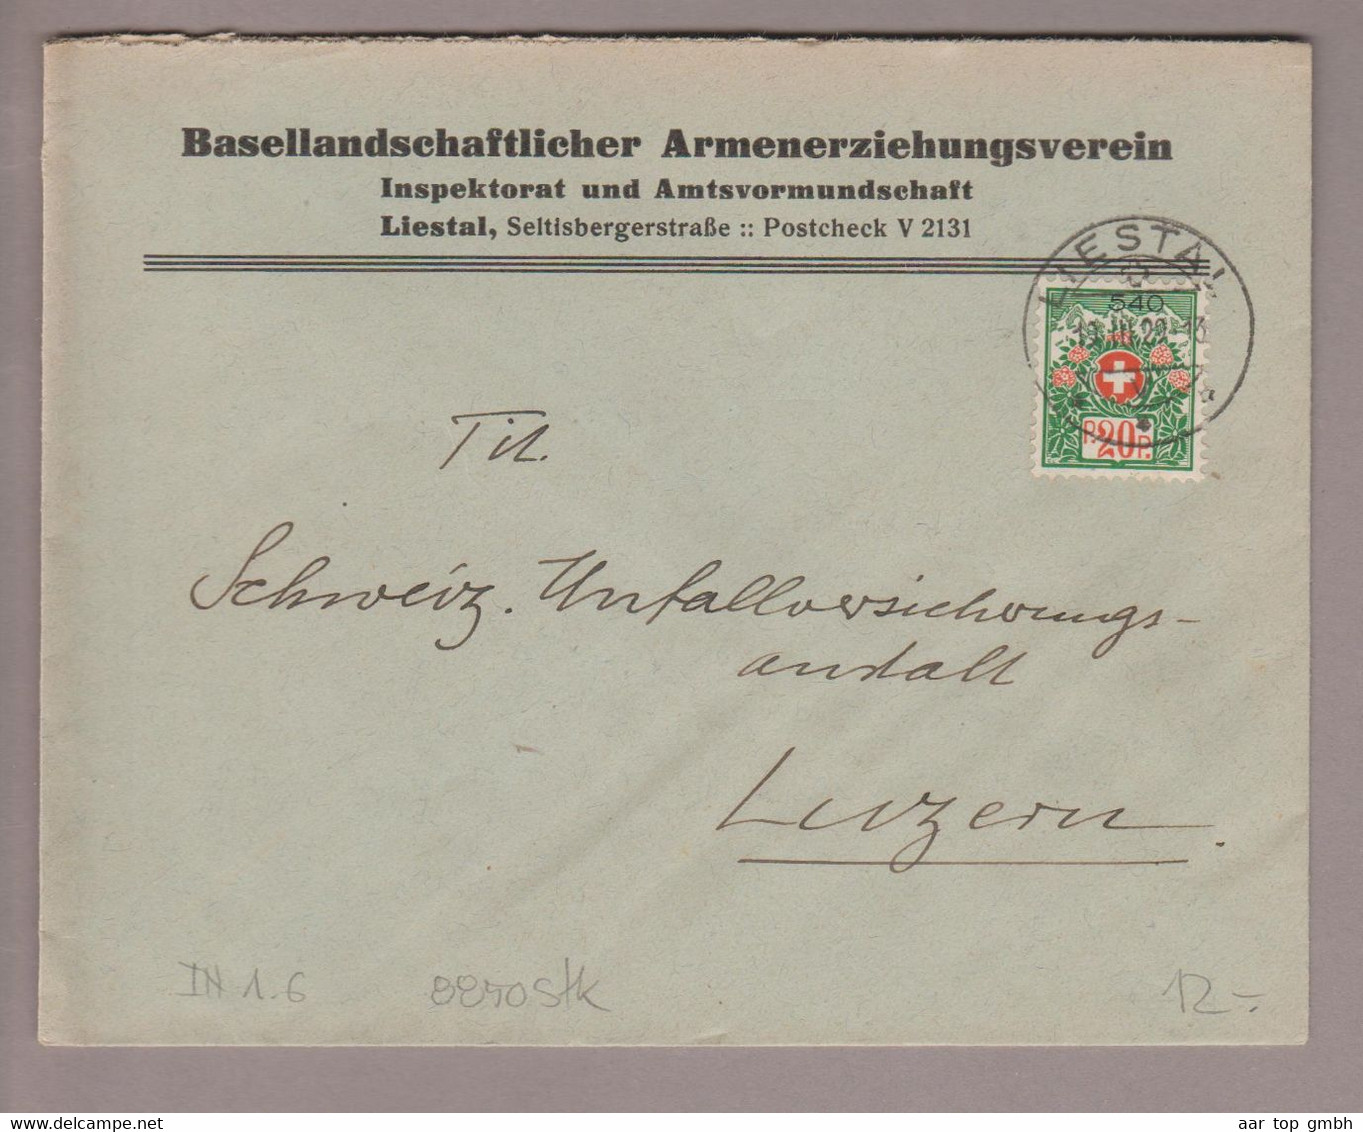 CH Portofreiheit Zu#12A 20Rp. GR#540 Brief 1929-03-19 Liestal Basellandschaftlicher Armenerziehungsverein - Vrijstelling Van Portkosten